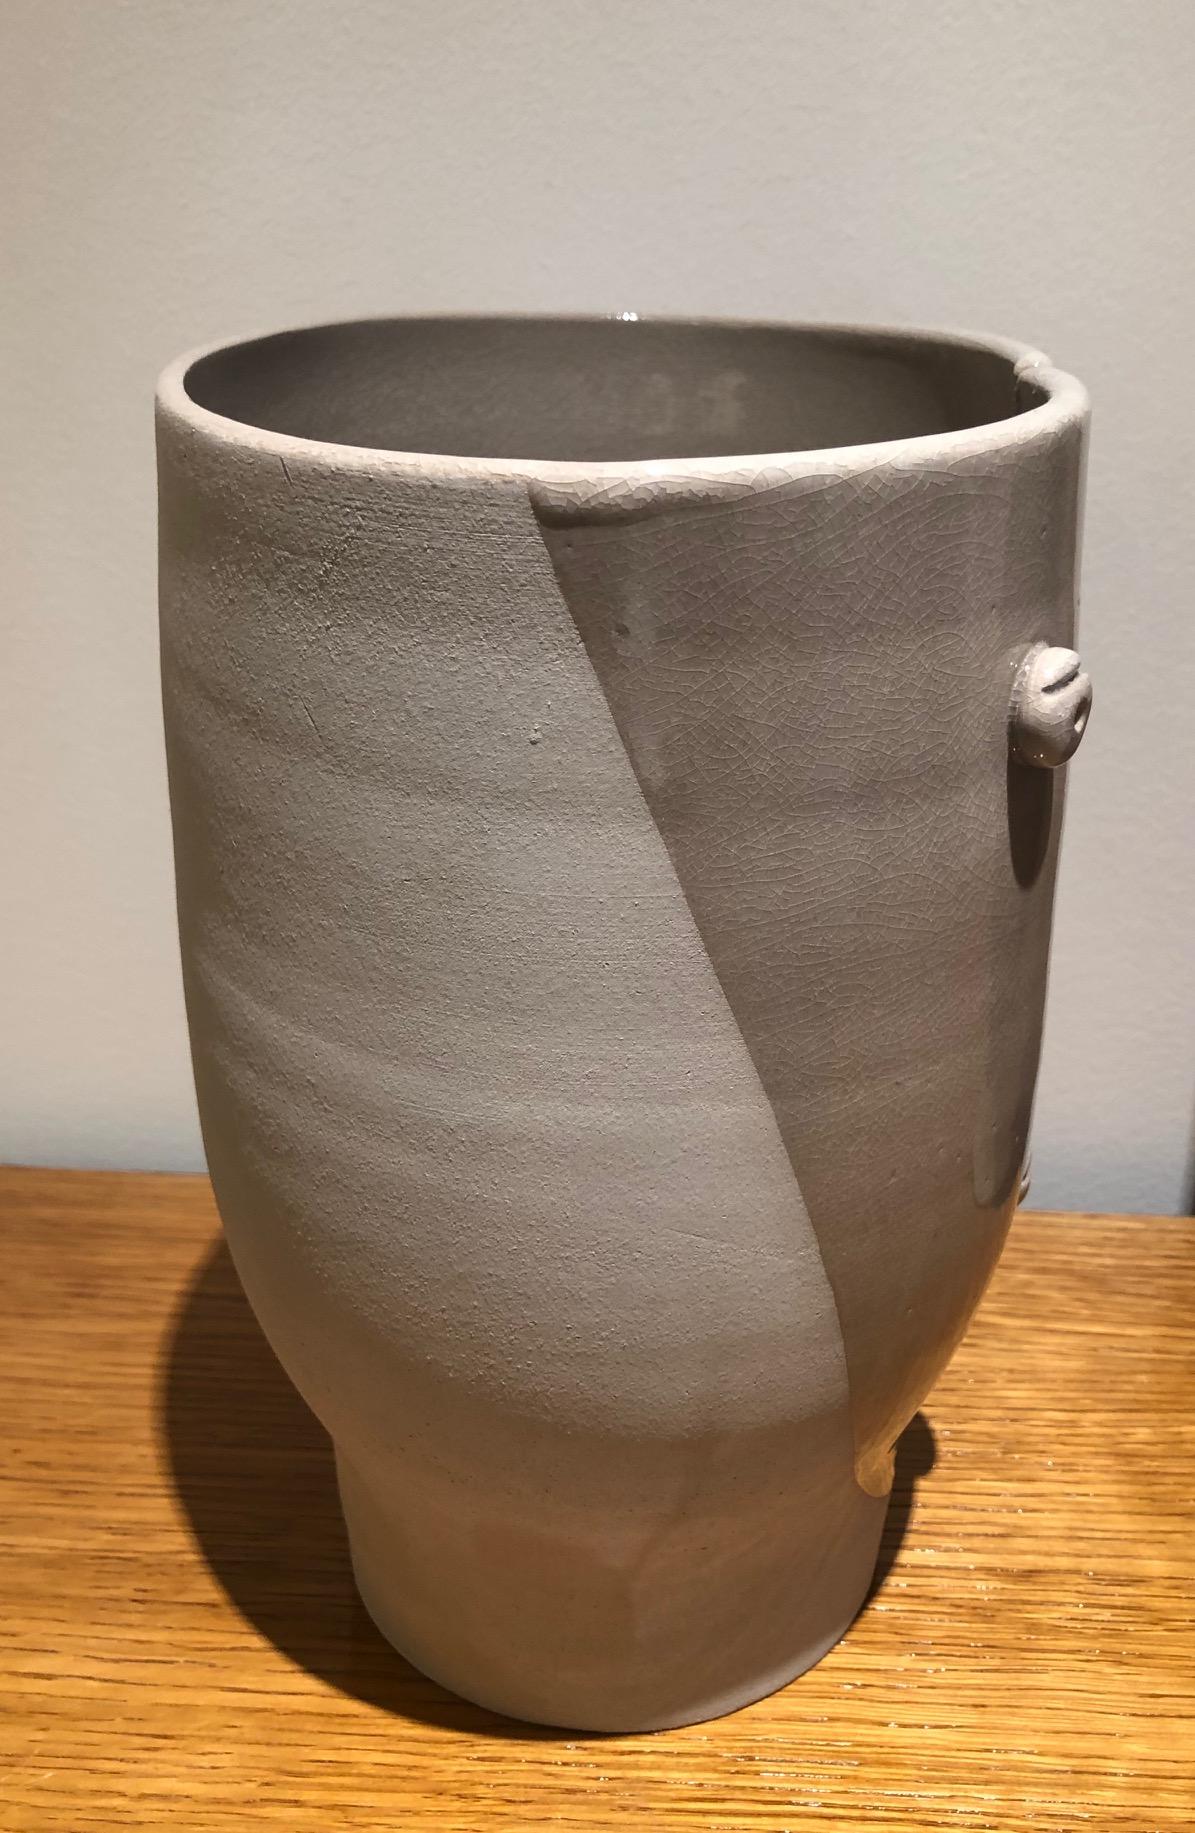 Idole Ceramic Vase Signed by Dalo 1